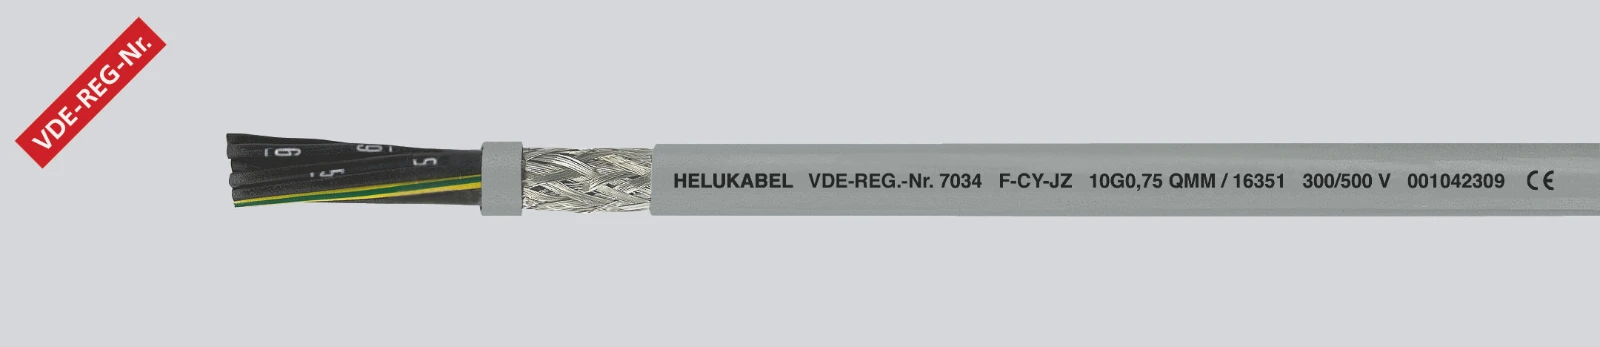 Helukabel Voedingskabel < 1 kV, voor beweegbare toepassingen F-CY-JZ